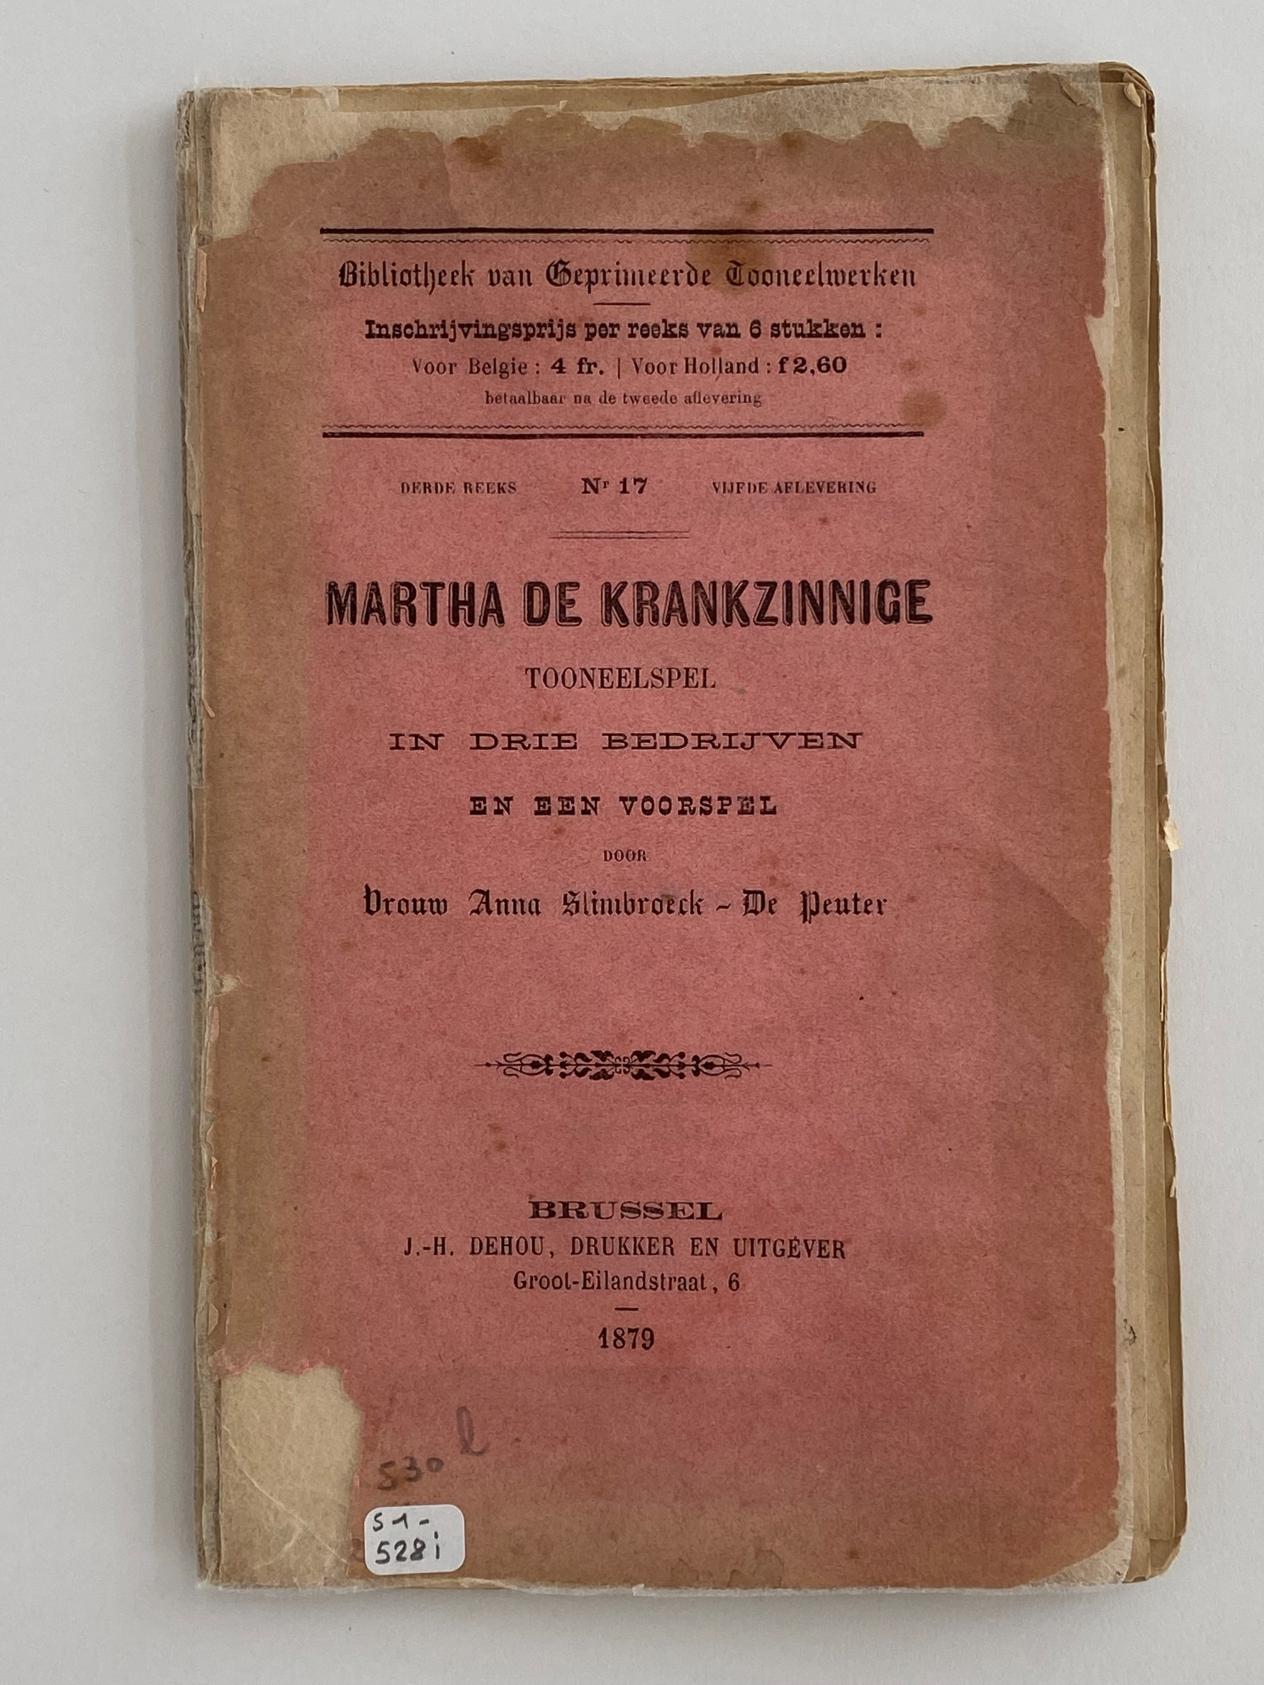 Martha De Krankzinnige - Toneelspel - Collectie Erfgoedbibliotheek Hendrik Conscience